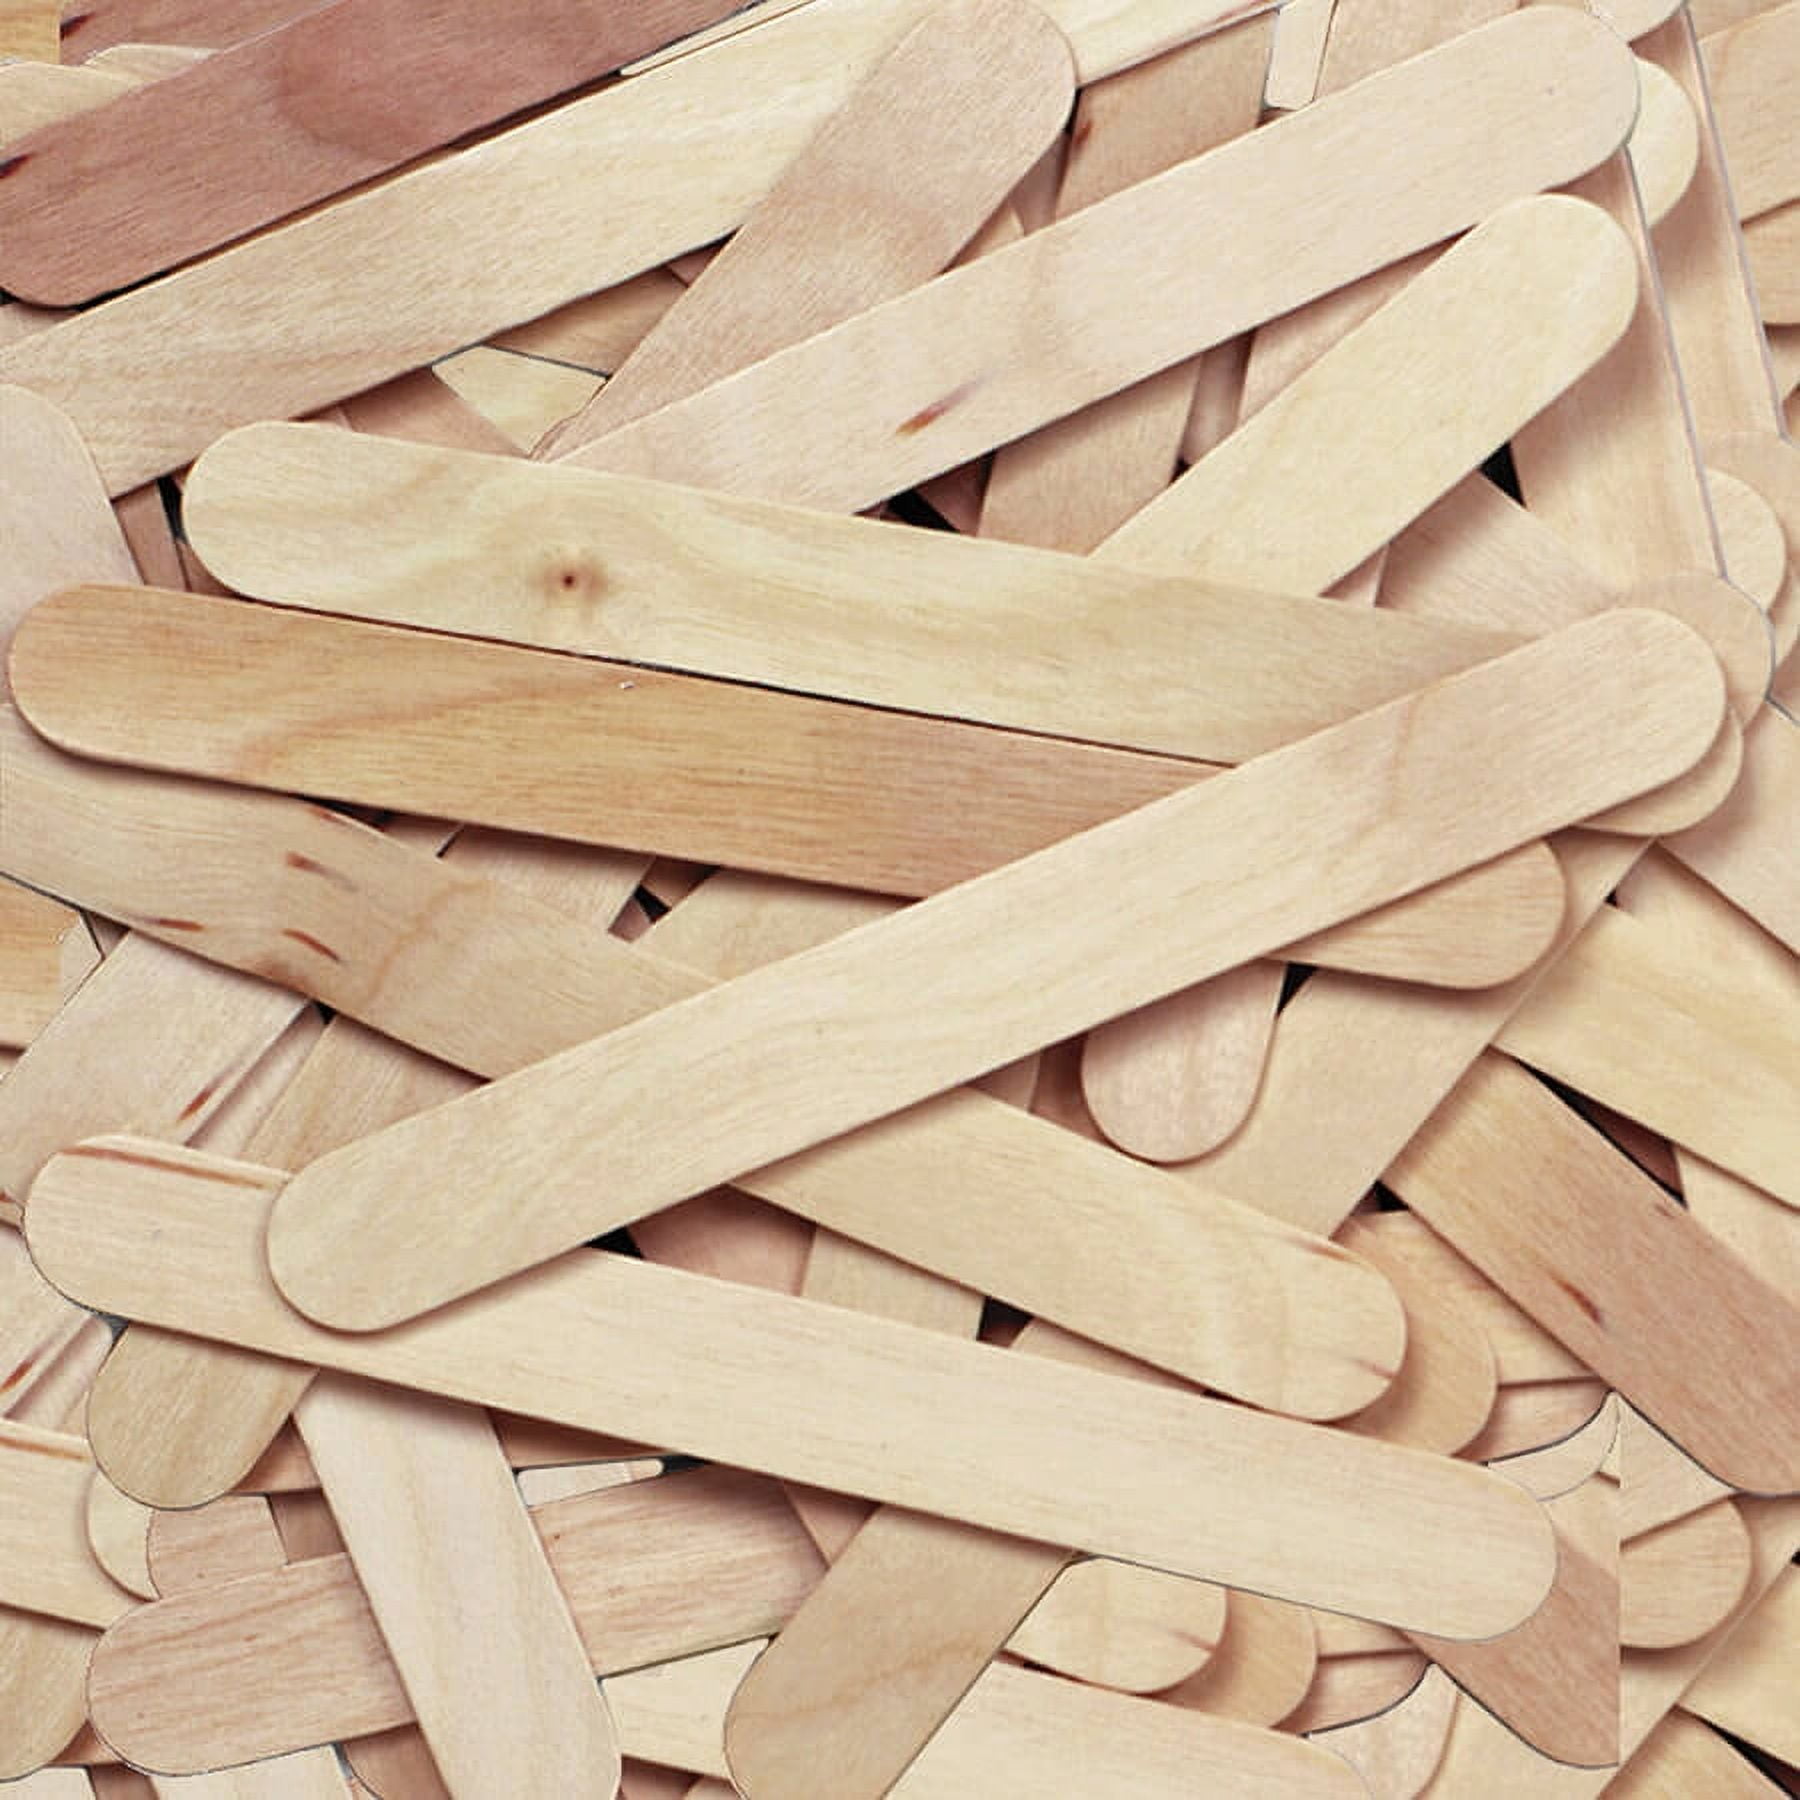  Natural Jumbo Wood Craft Sticks 6 Length (500) : Arts